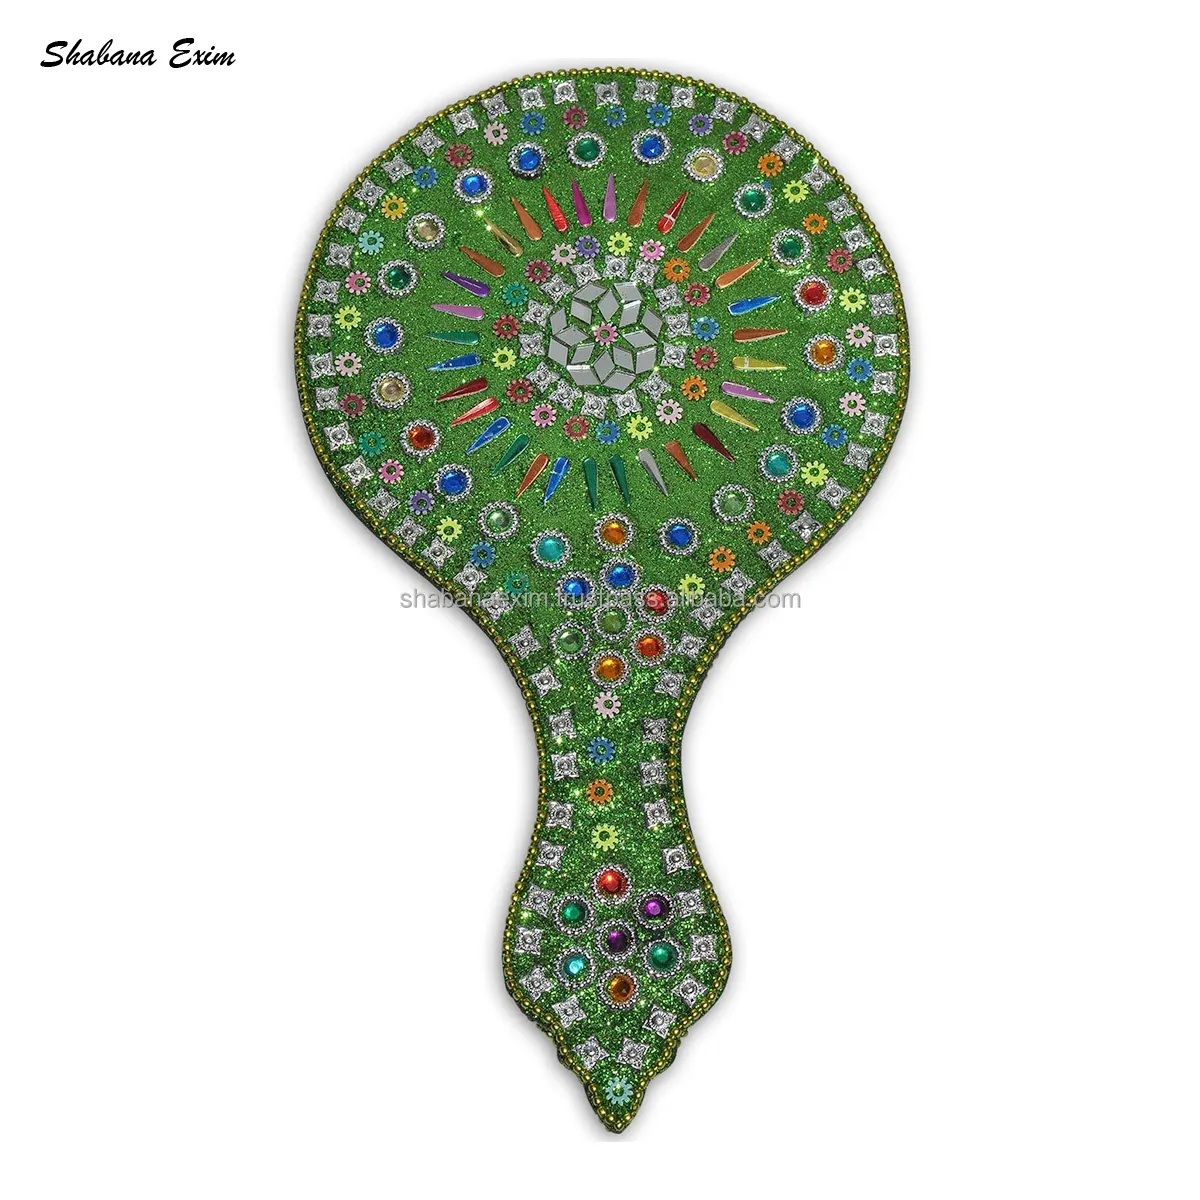 인도 제조 업체의 하이 퀄리티 아름다운 디자인 녹색 반짝이 멀티 페르시 작업 핸드 헬드 메이크업 거울